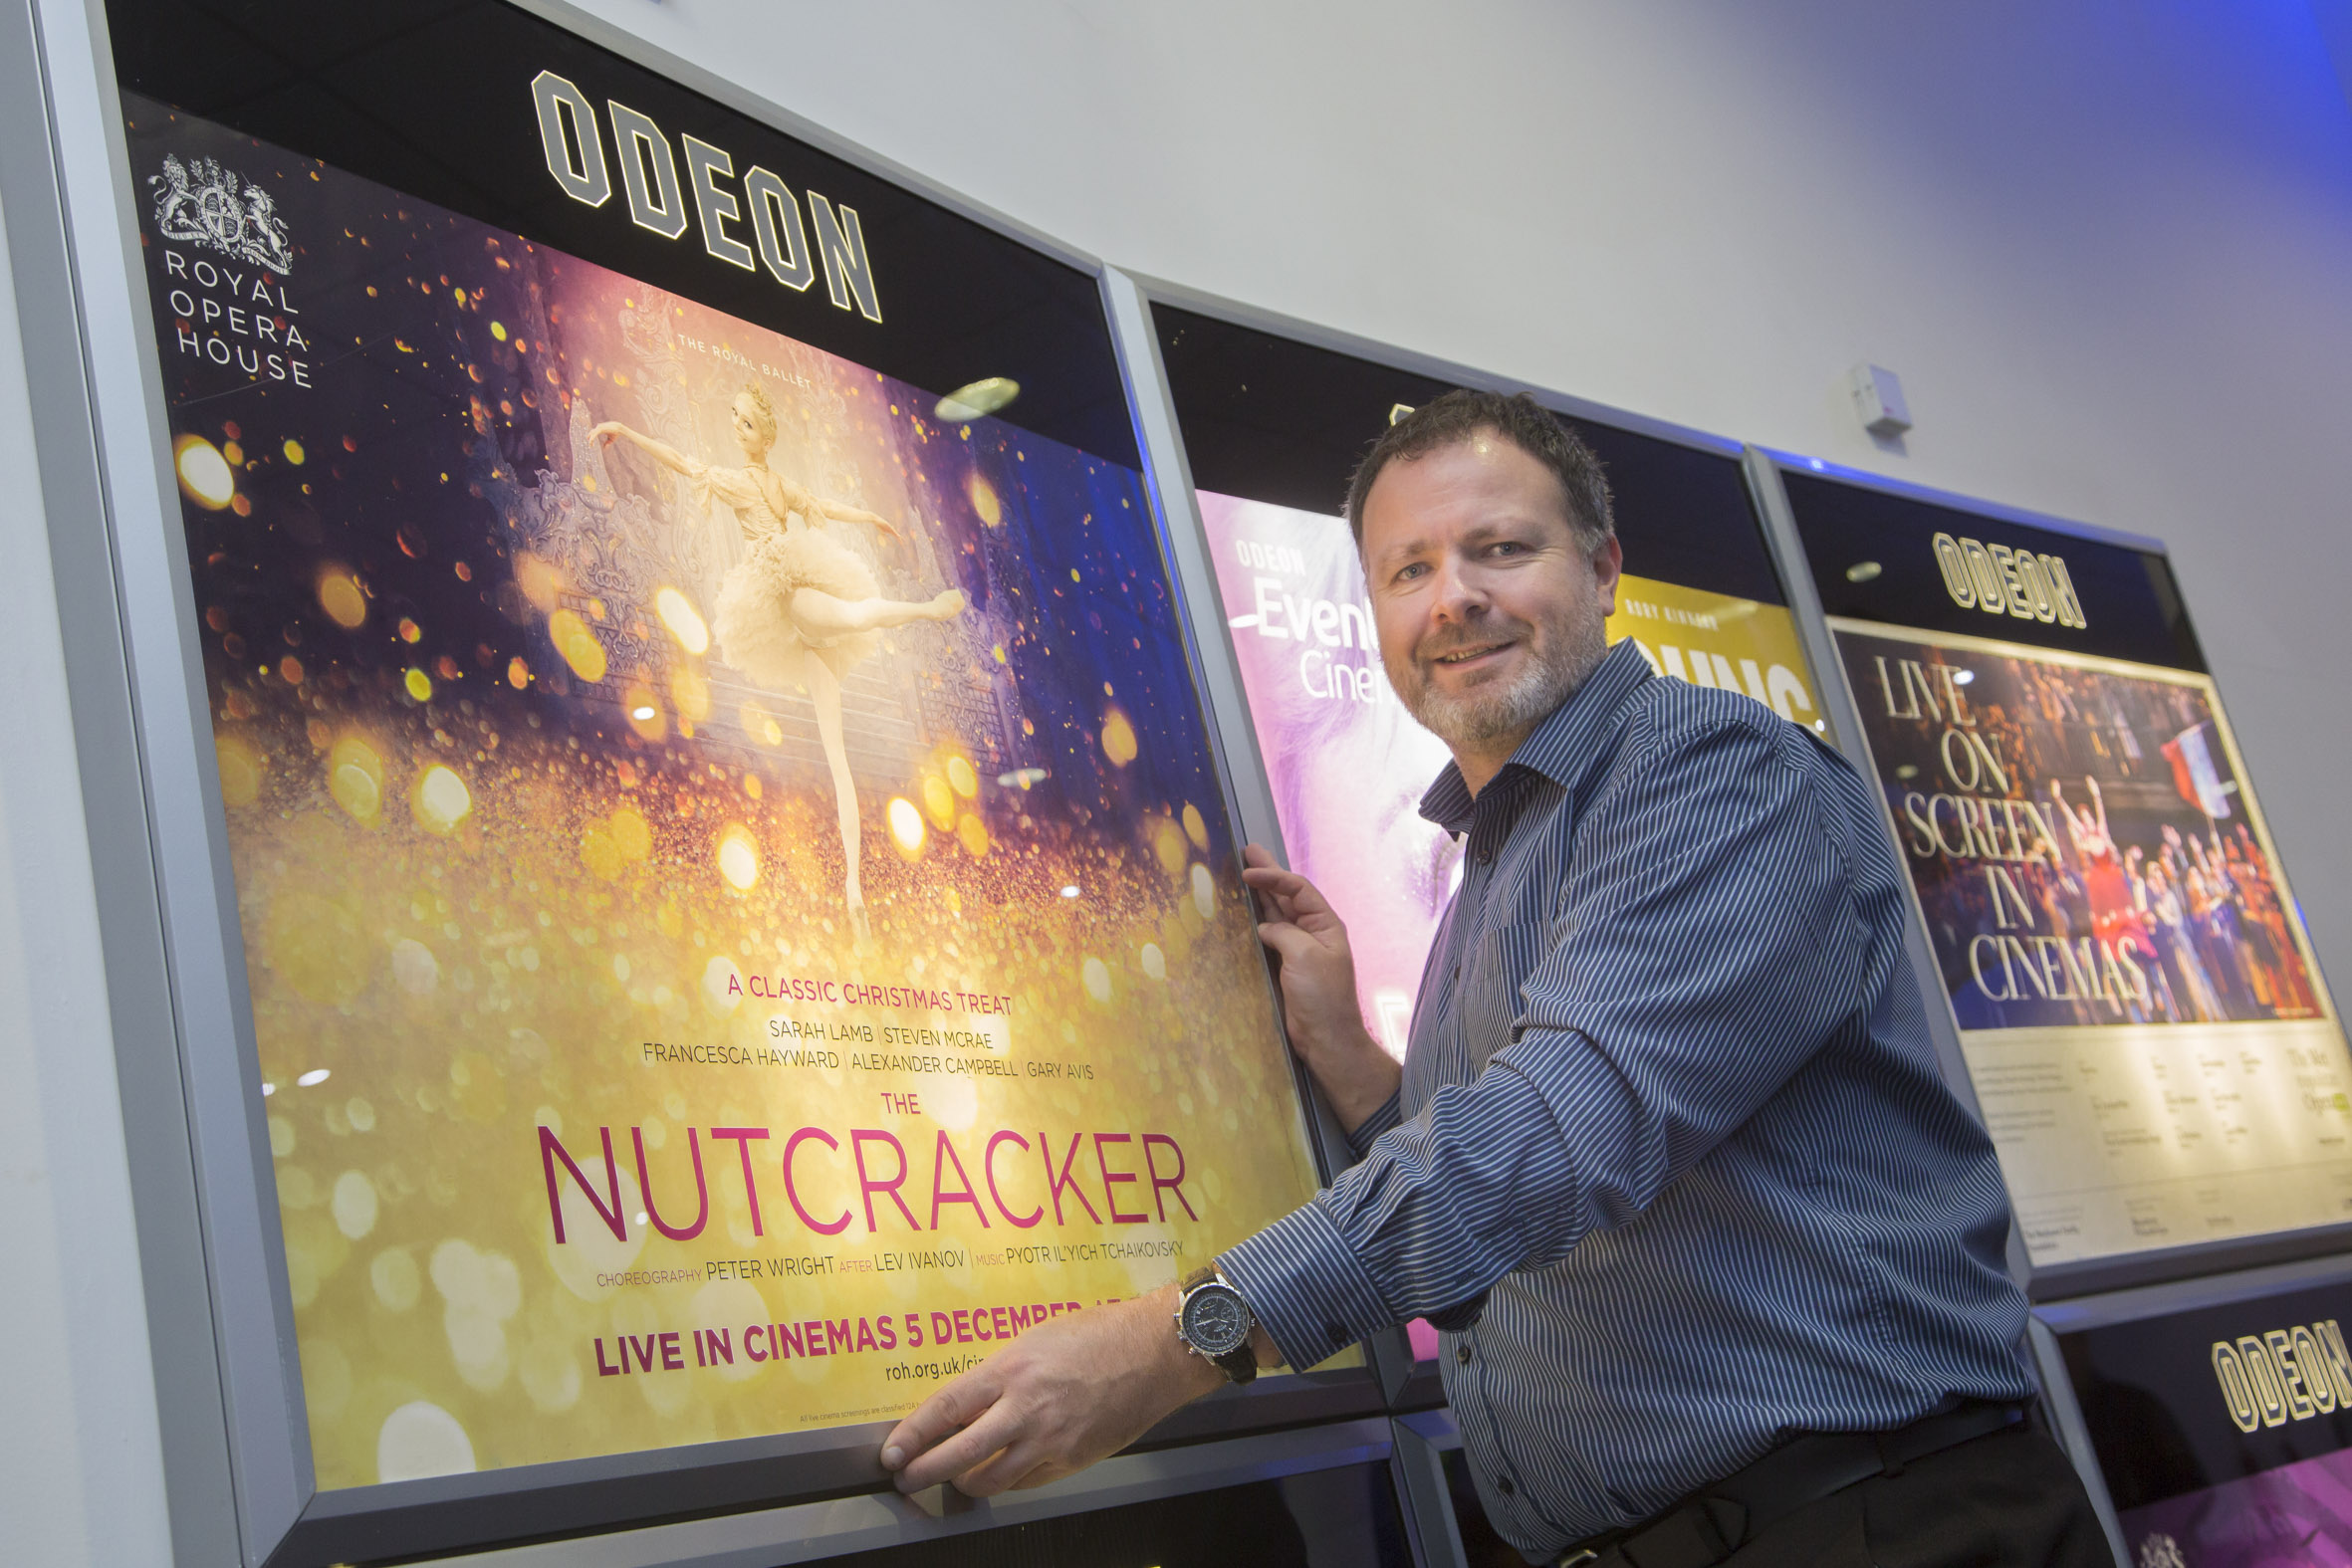 Nutcracker ballet comes to Odeon